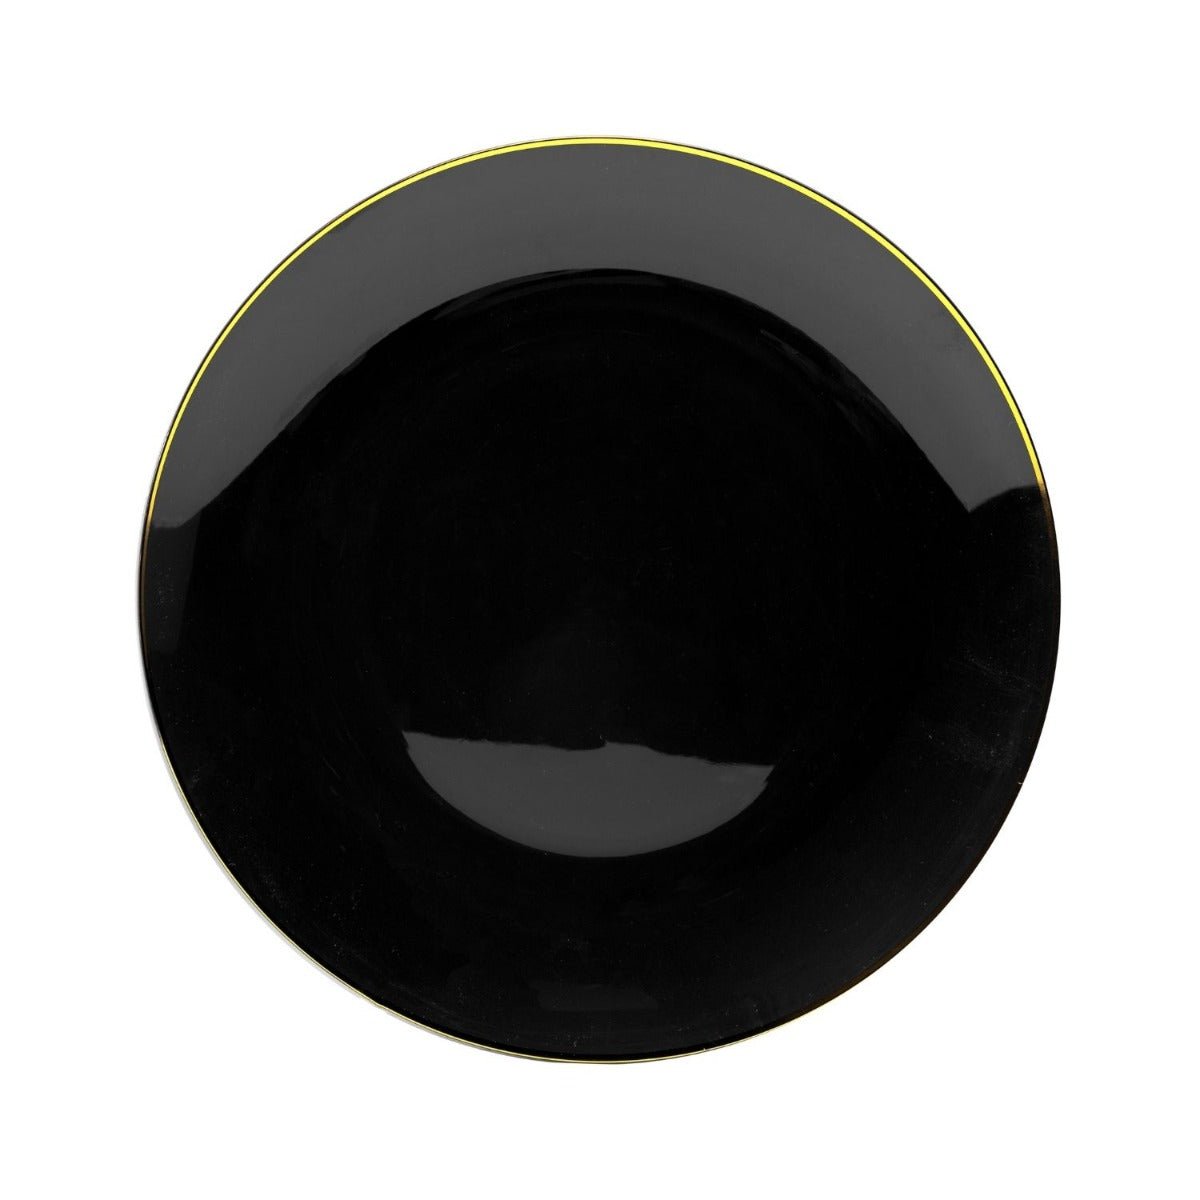 10" Black & Gold Rim Design Plastic Plates (120 Count)